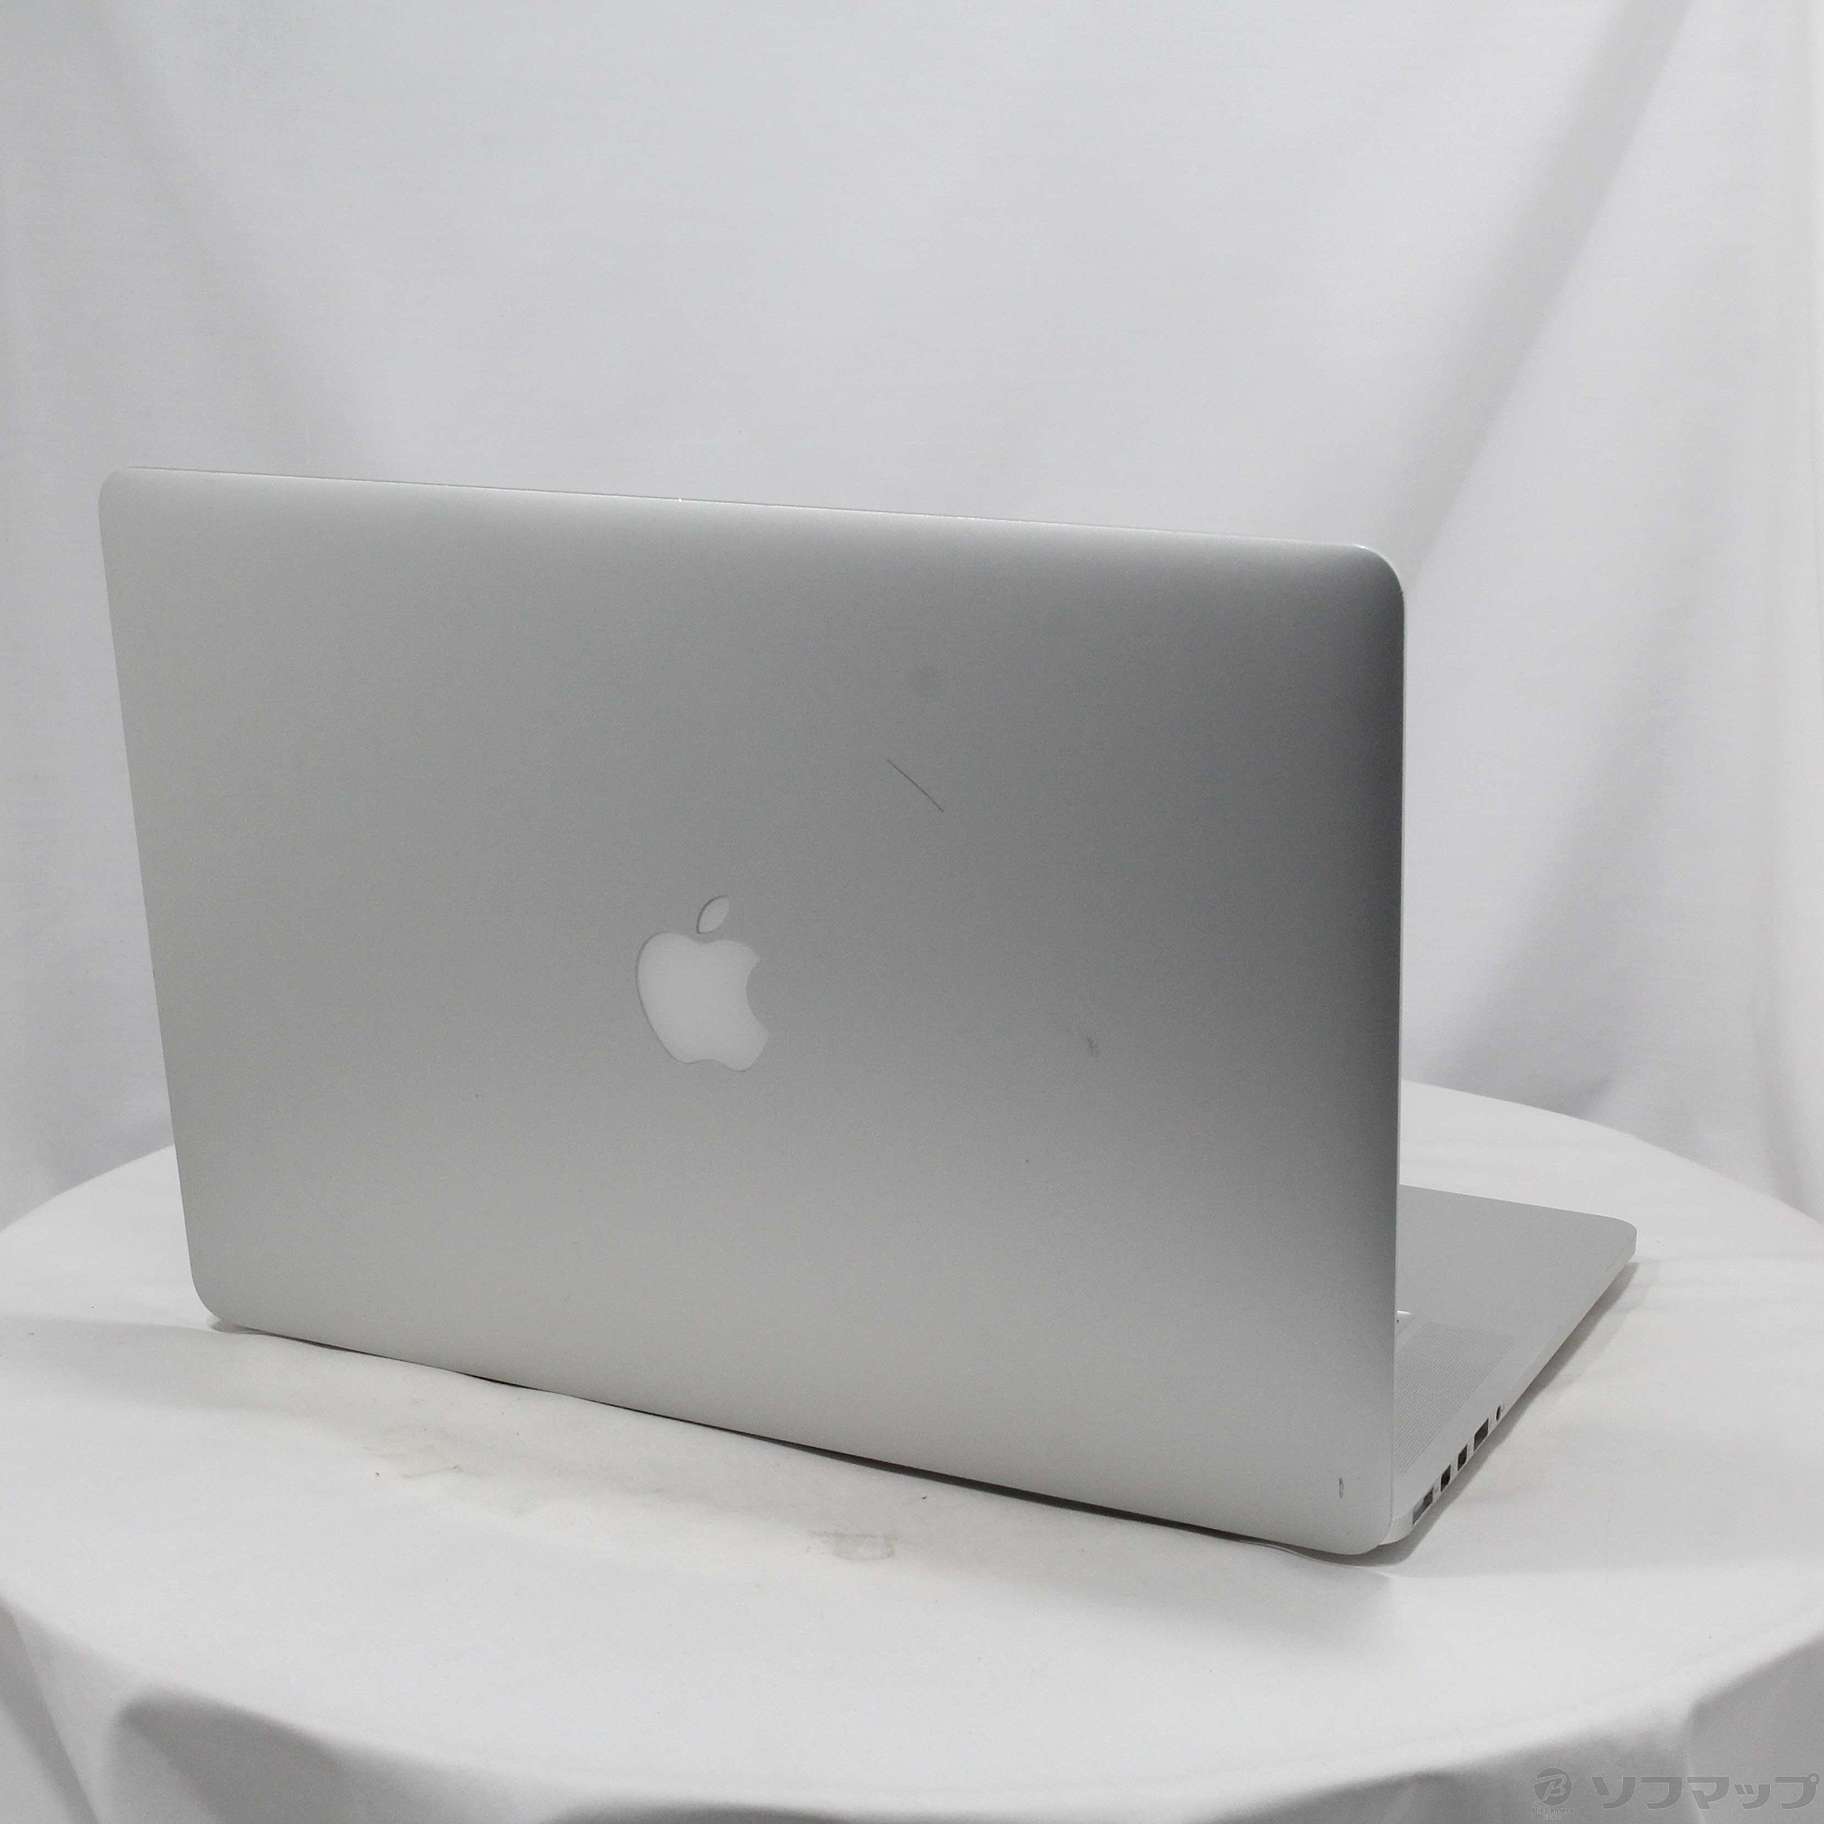 APPLE MacBook Pro 2015 mid MJLQ2J/A